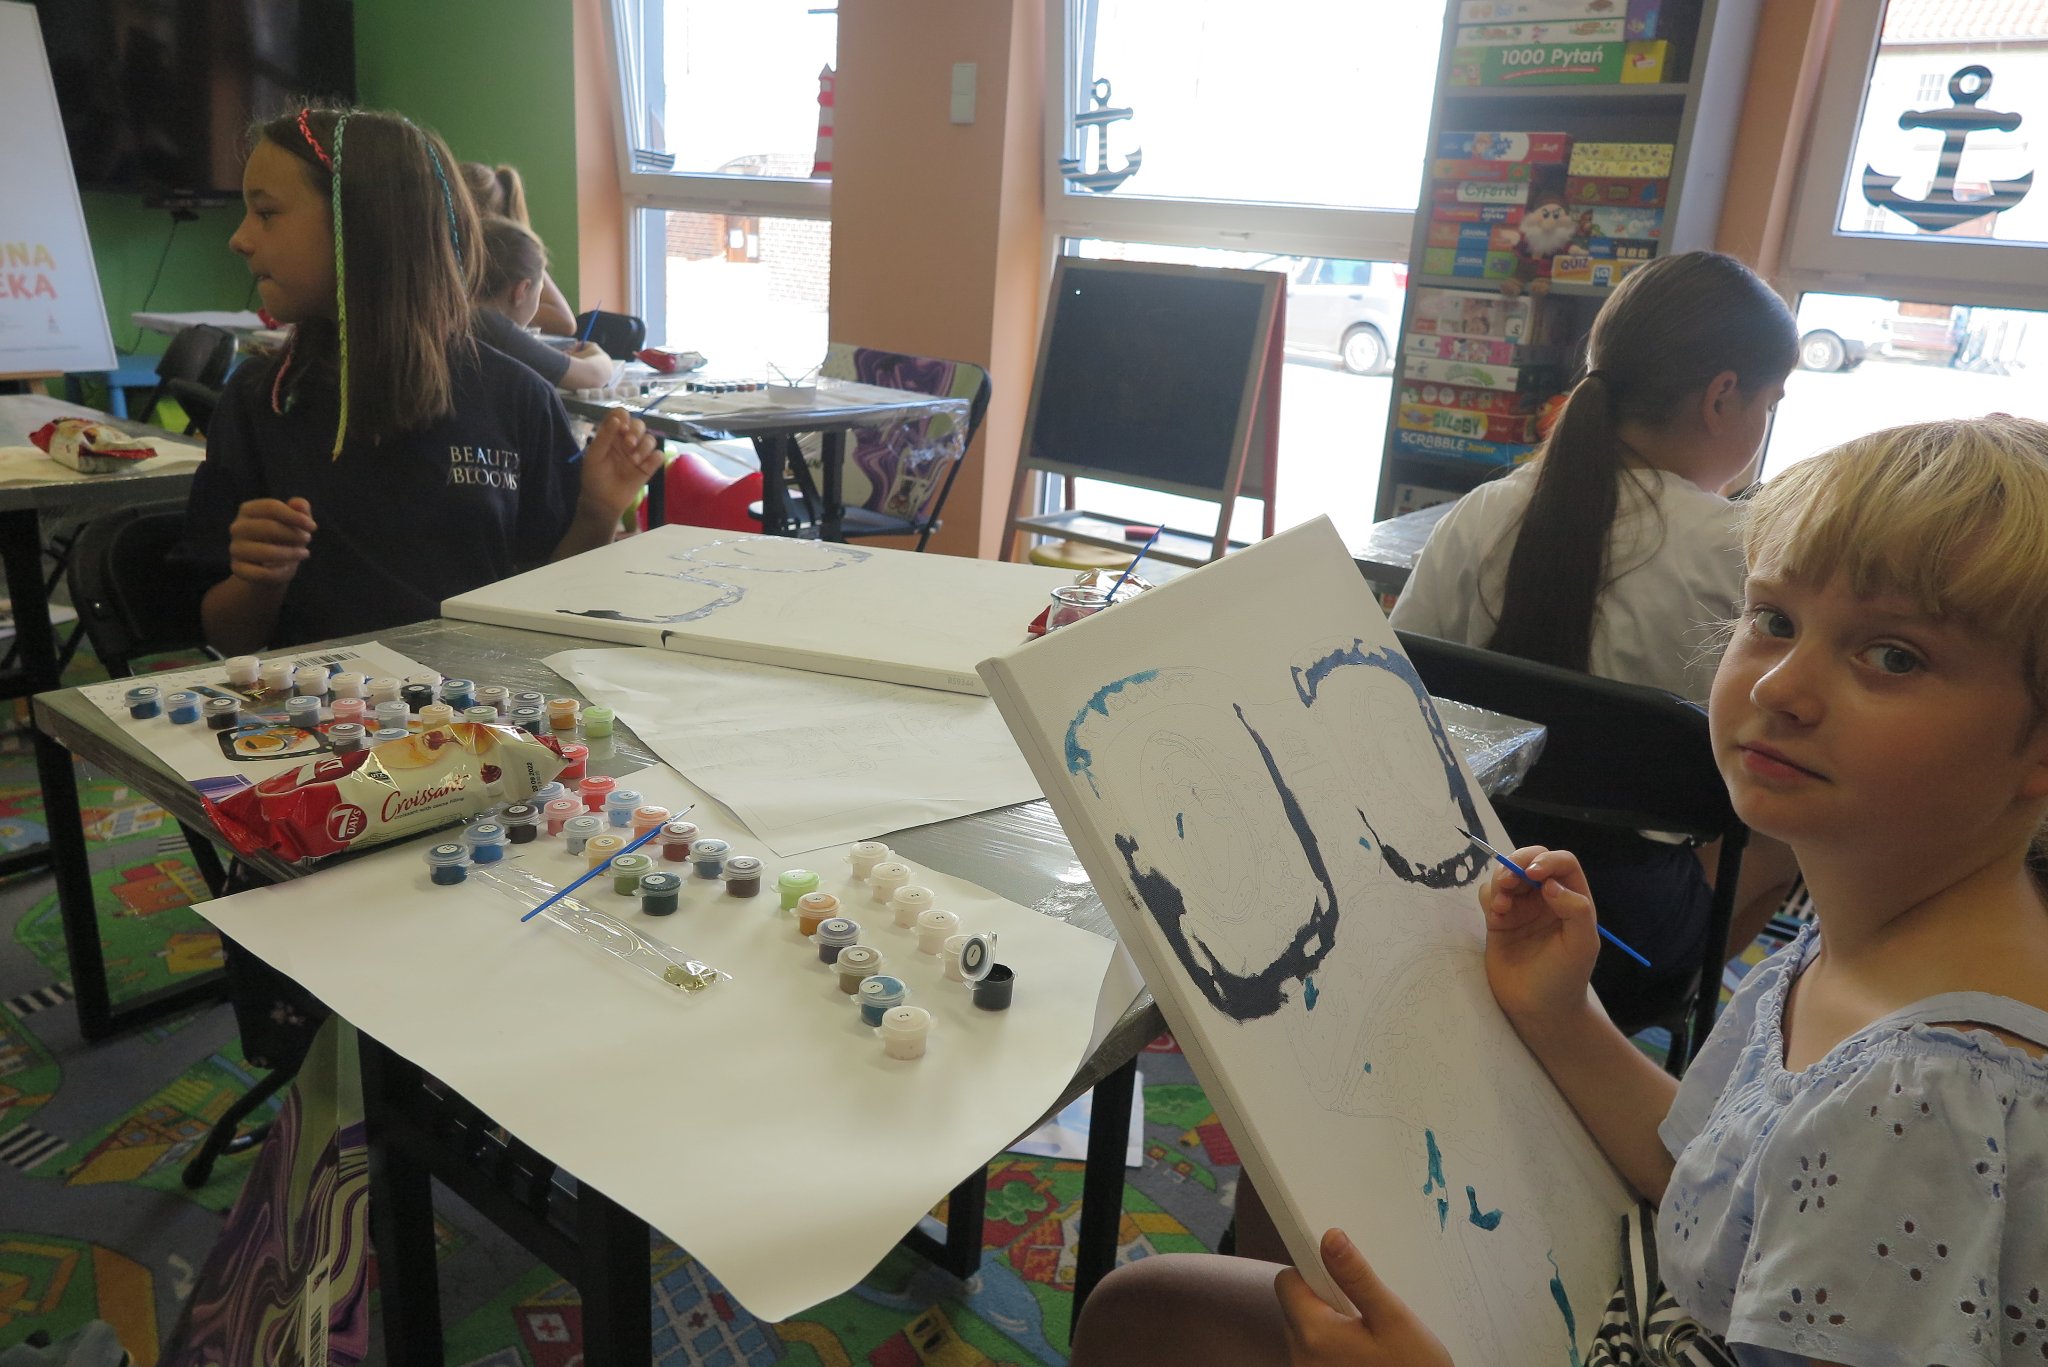 uczestnicy warsztatów plastycznych malowania na płótnie, siedzą przy stolikach na których leżą płótna i farby, malują obrazy